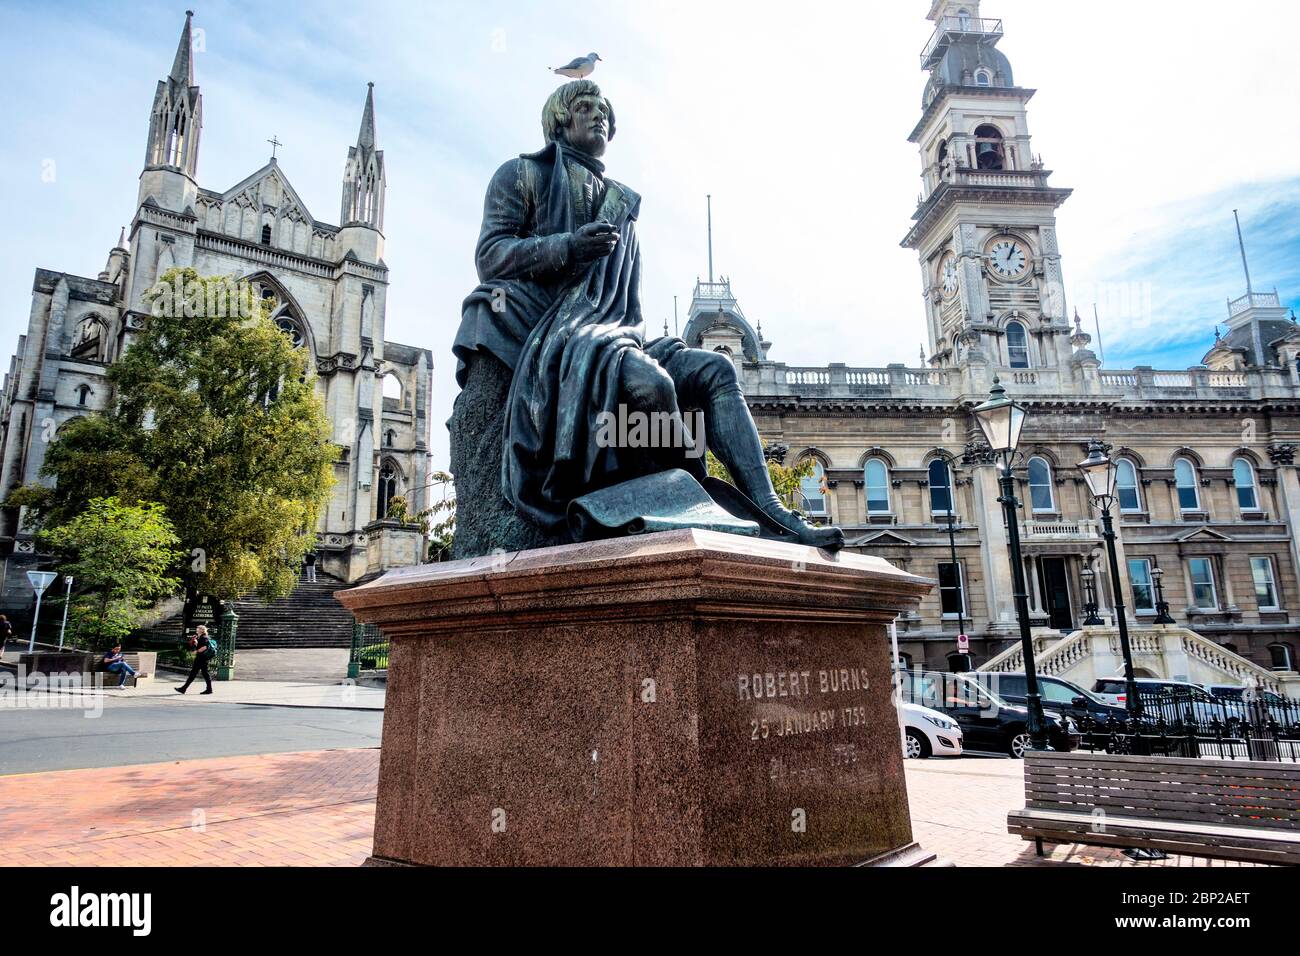 Eine Statue von Robert Burns, dem nationalen Dichter Schottlands, im Octagon, Dundedinin, in derselben Pose wie die in Dundee, Schottland. Stockfoto